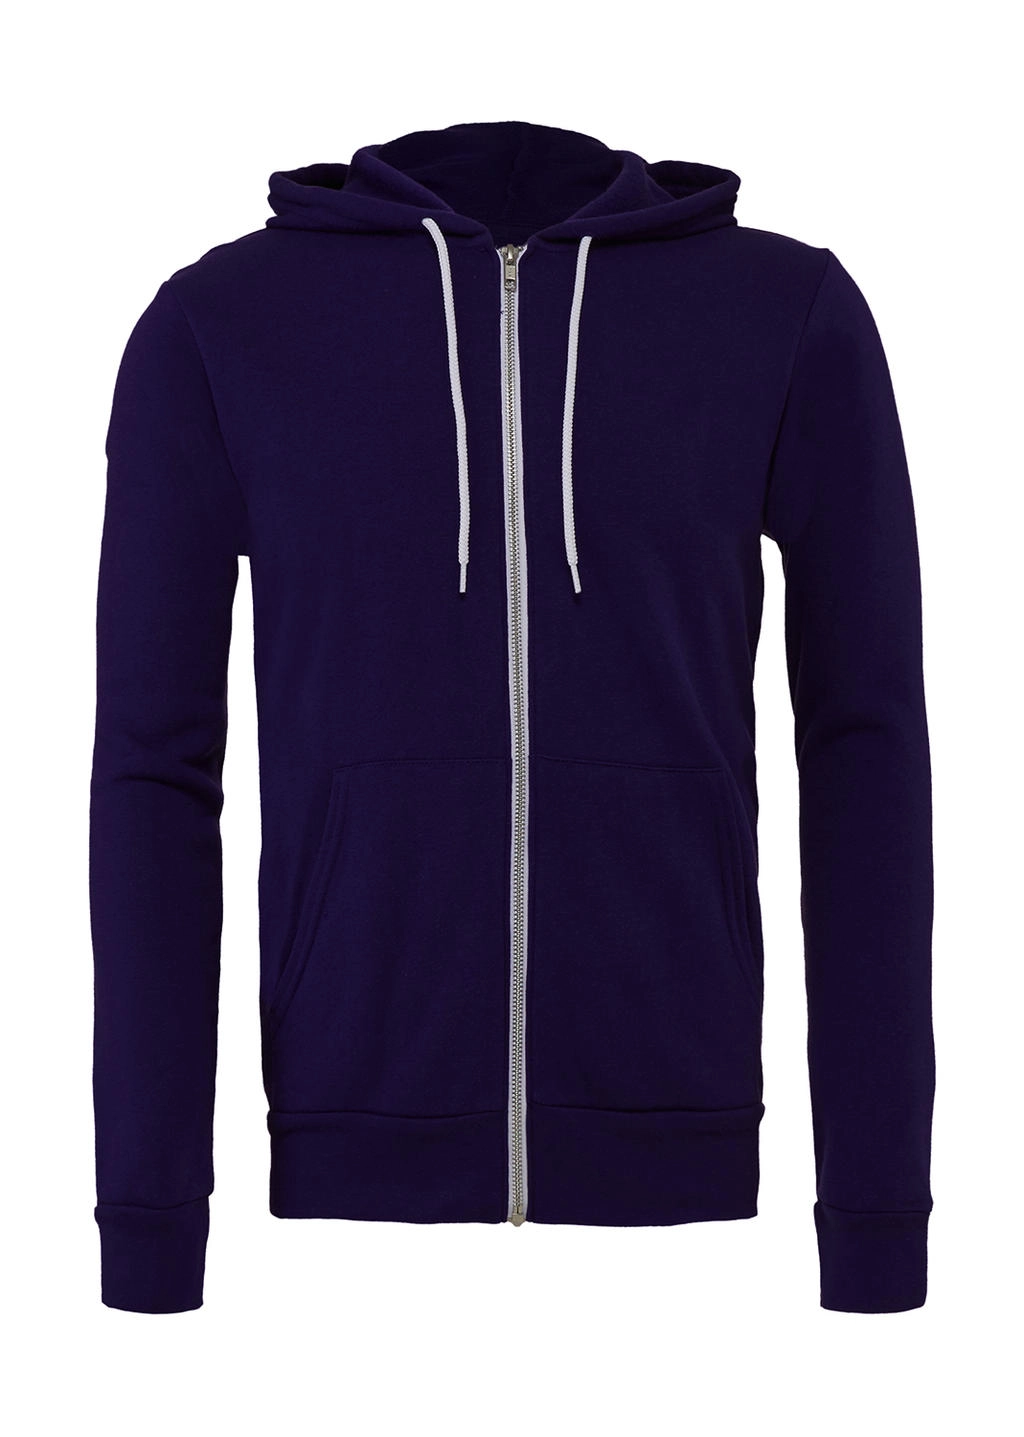 Unisex Poly-Cotton Full Zip Hoodie zum Besticken und Bedrucken in der Farbe Team Purple mit Ihren Logo, Schriftzug oder Motiv.